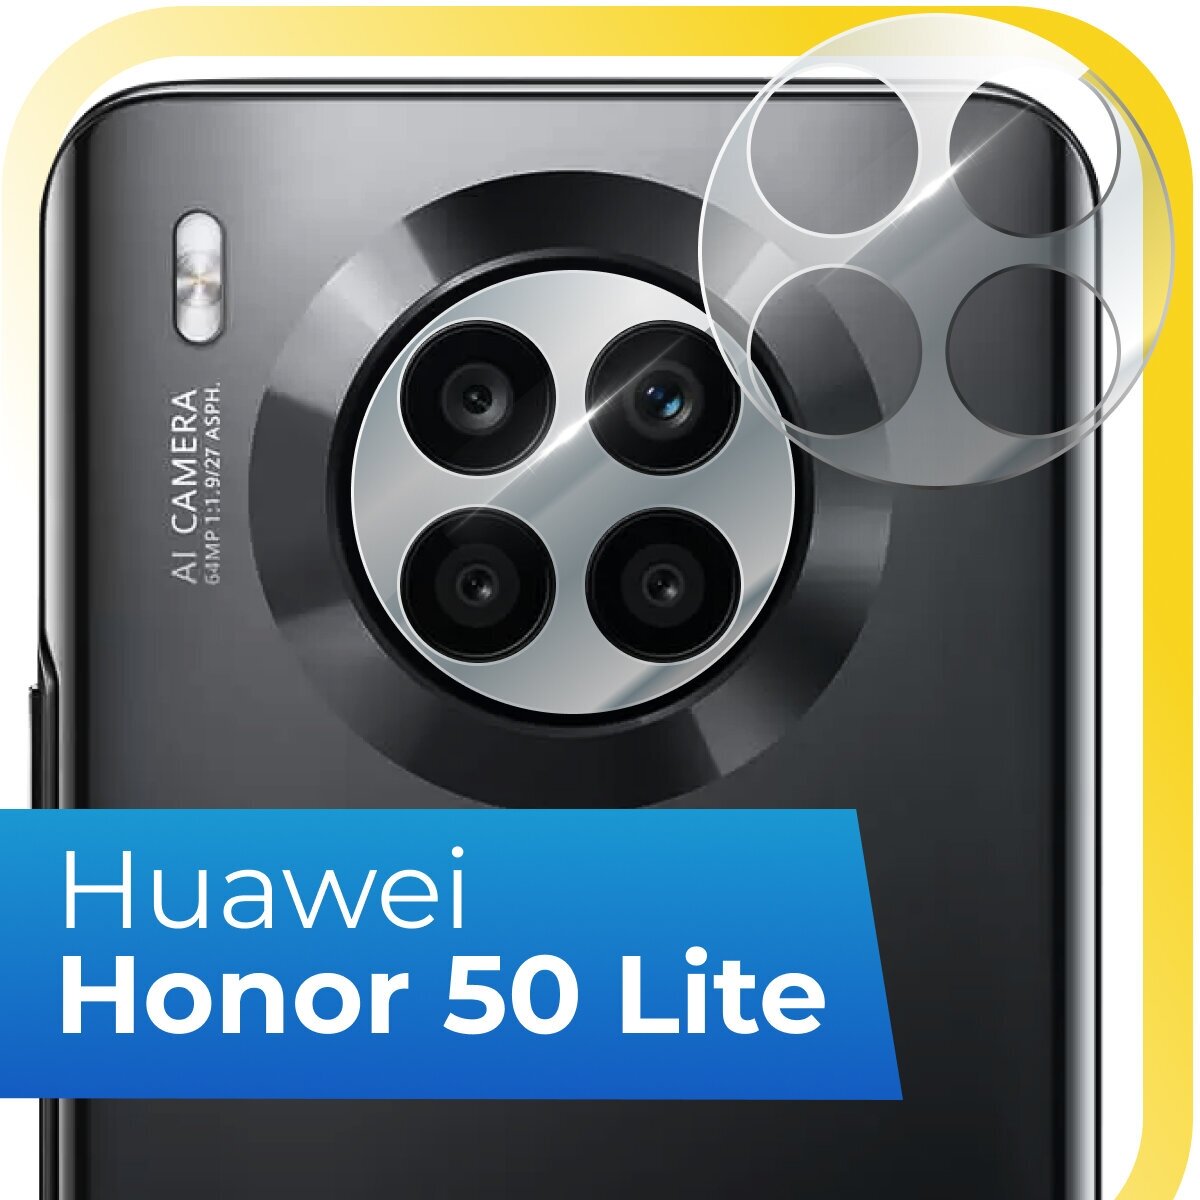 Защитное стекло на камеру телефона Huawei Honor 50 Lite / Противоударное стекло для задней камеры смартфона Хуавей Хонор 50 Лайт / Прозрачное